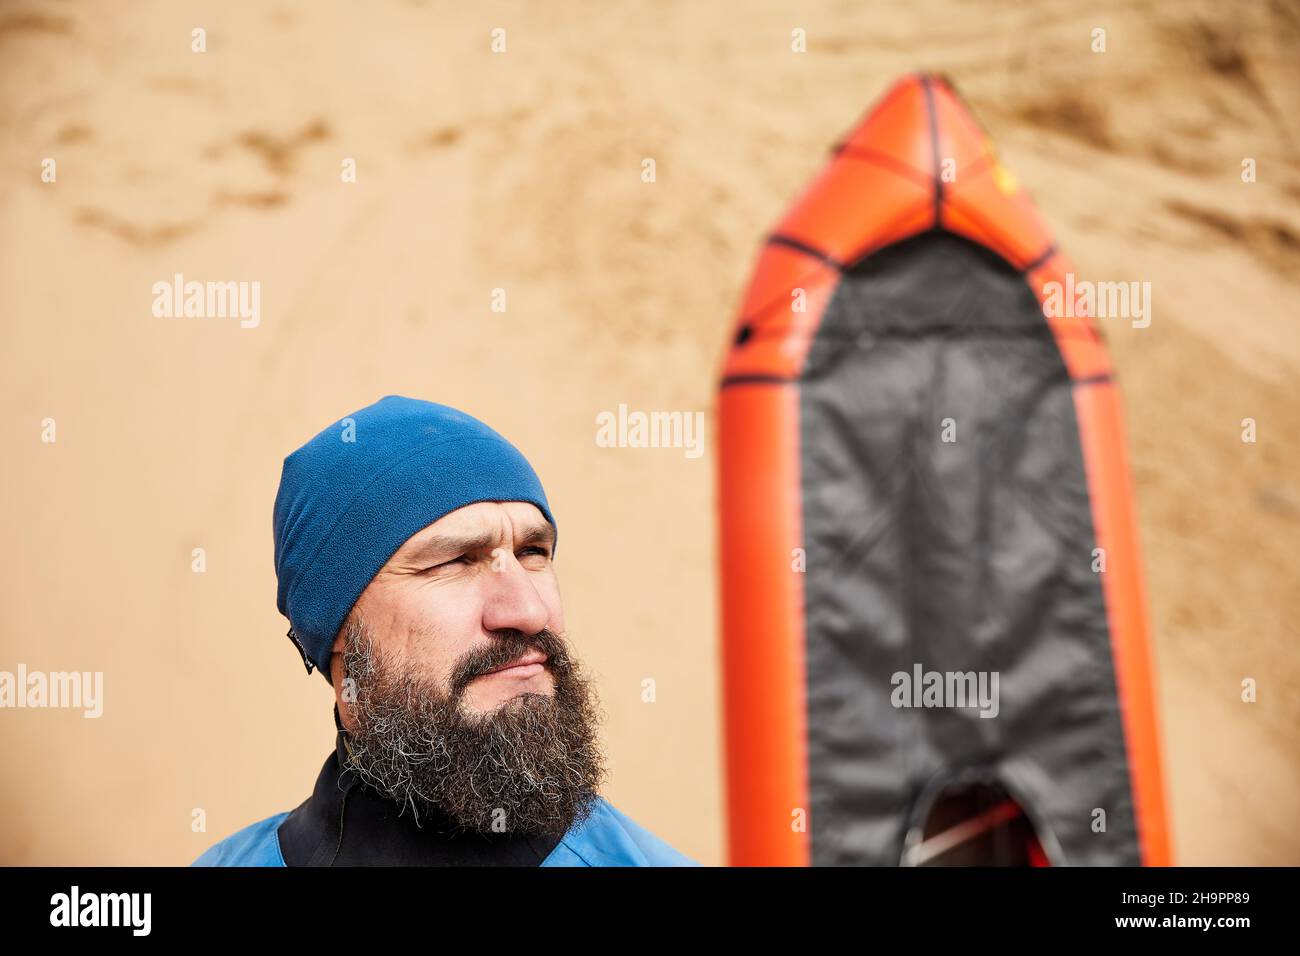 Retrato del anciano con barba negra y remar en chaqueta azul cerca de bote deportivo naranja balsa en fondo de dunas de arena Foto de stock